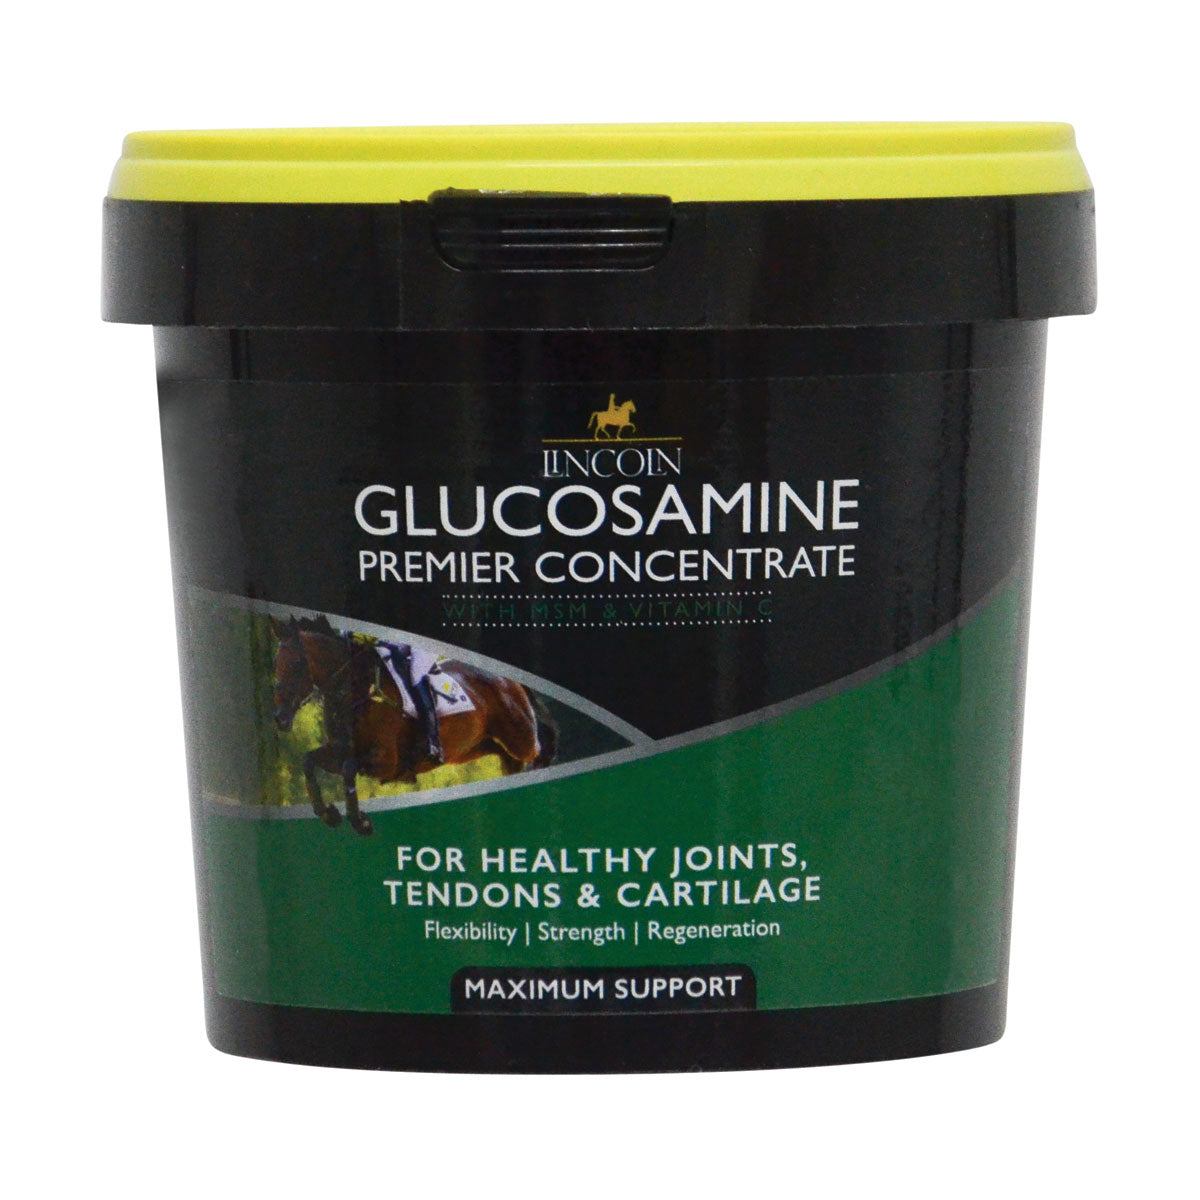 Lincoln Glucosamine Premier Concentrate